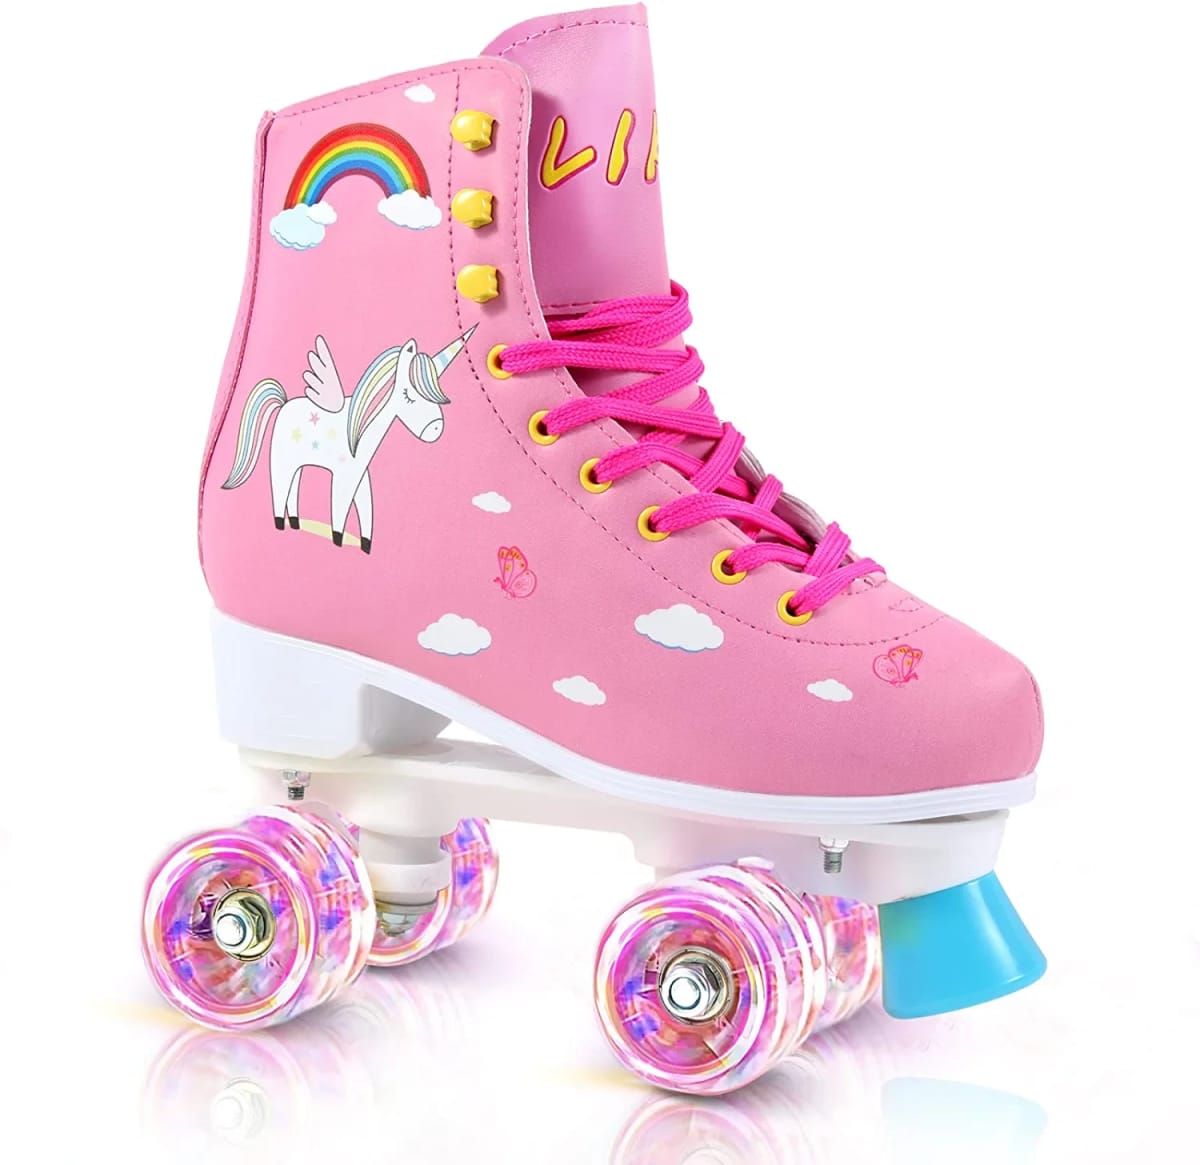 Quad Roller Skates for Girl and Women